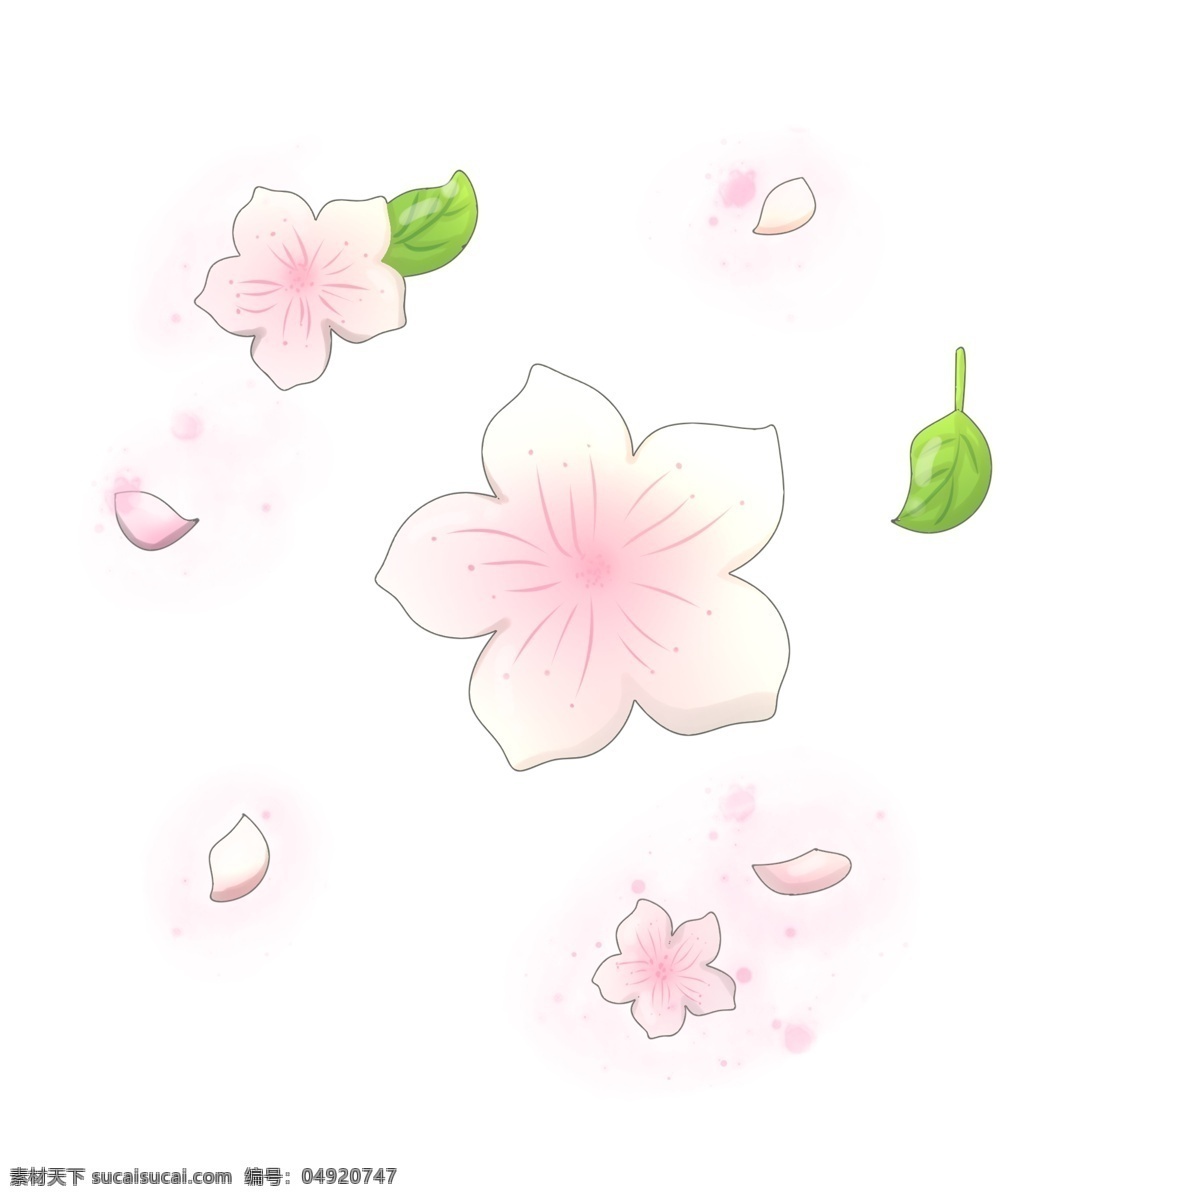 漂亮 桃花 装饰 插画 漂亮的桃花 粉色的桃花 创意桃花 立体桃花 精美桃花 桃花装饰 桃花插画